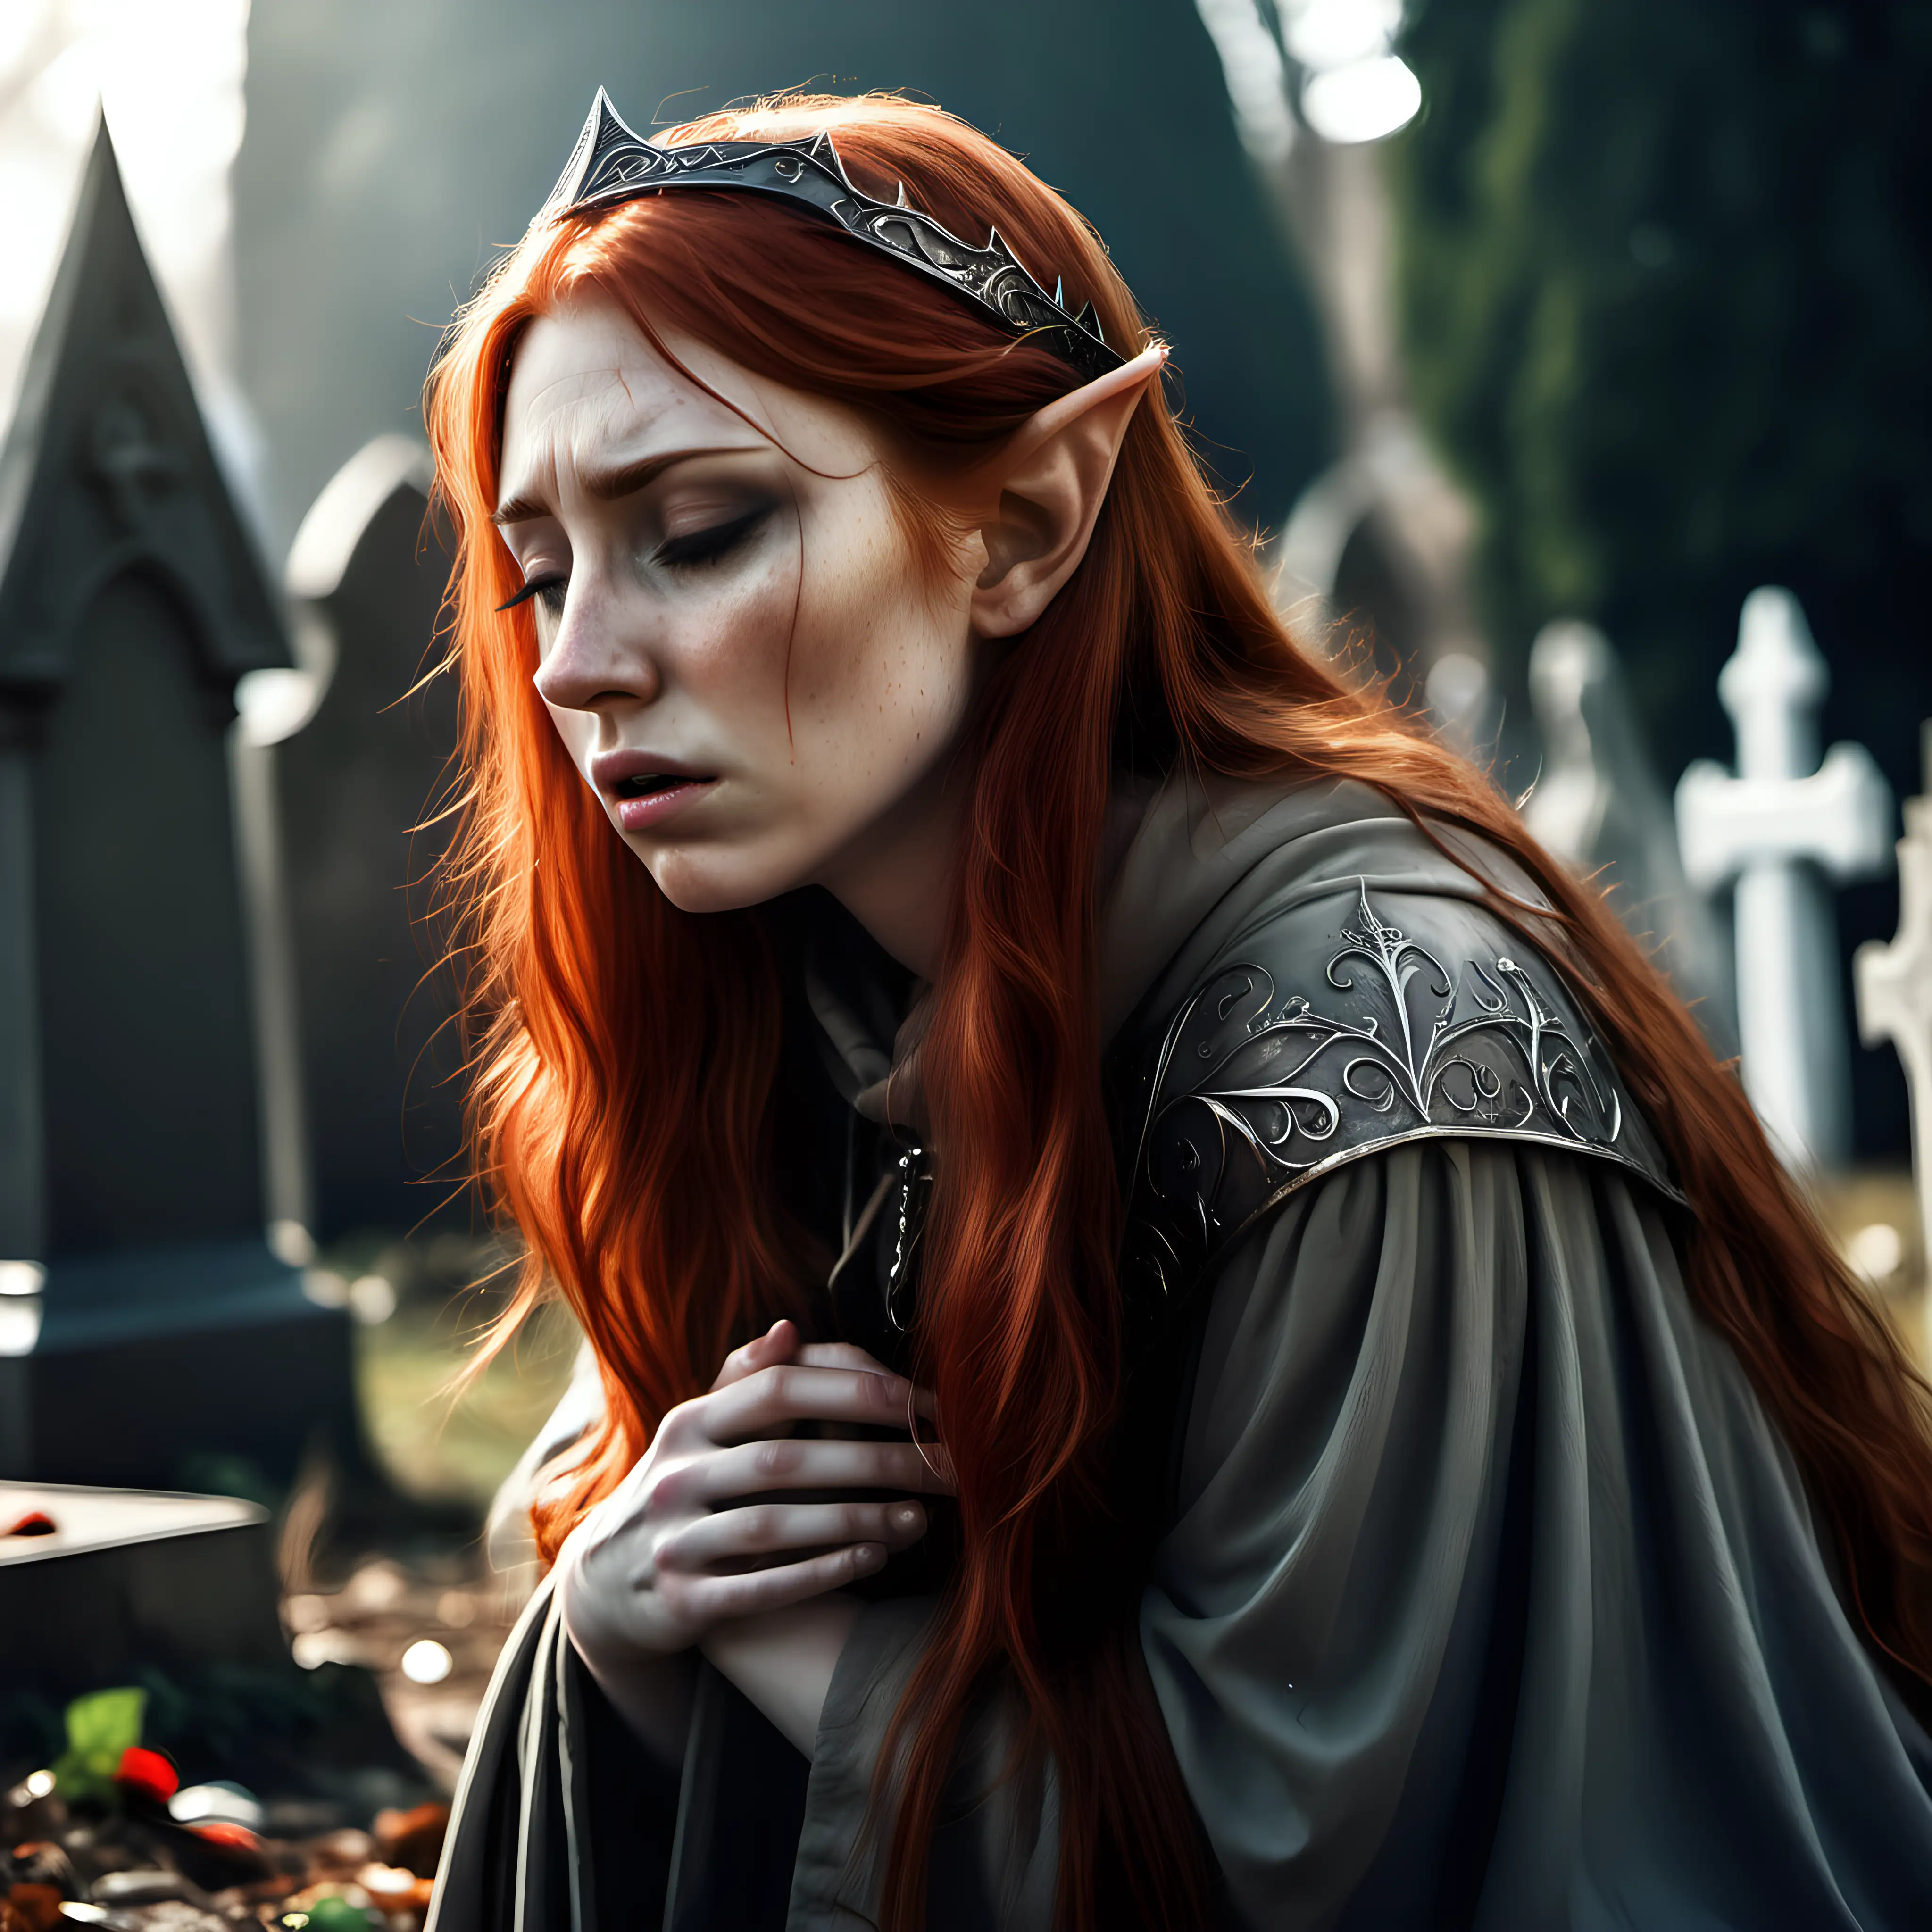 Grieving Elf Princess in Medieval Graveyard